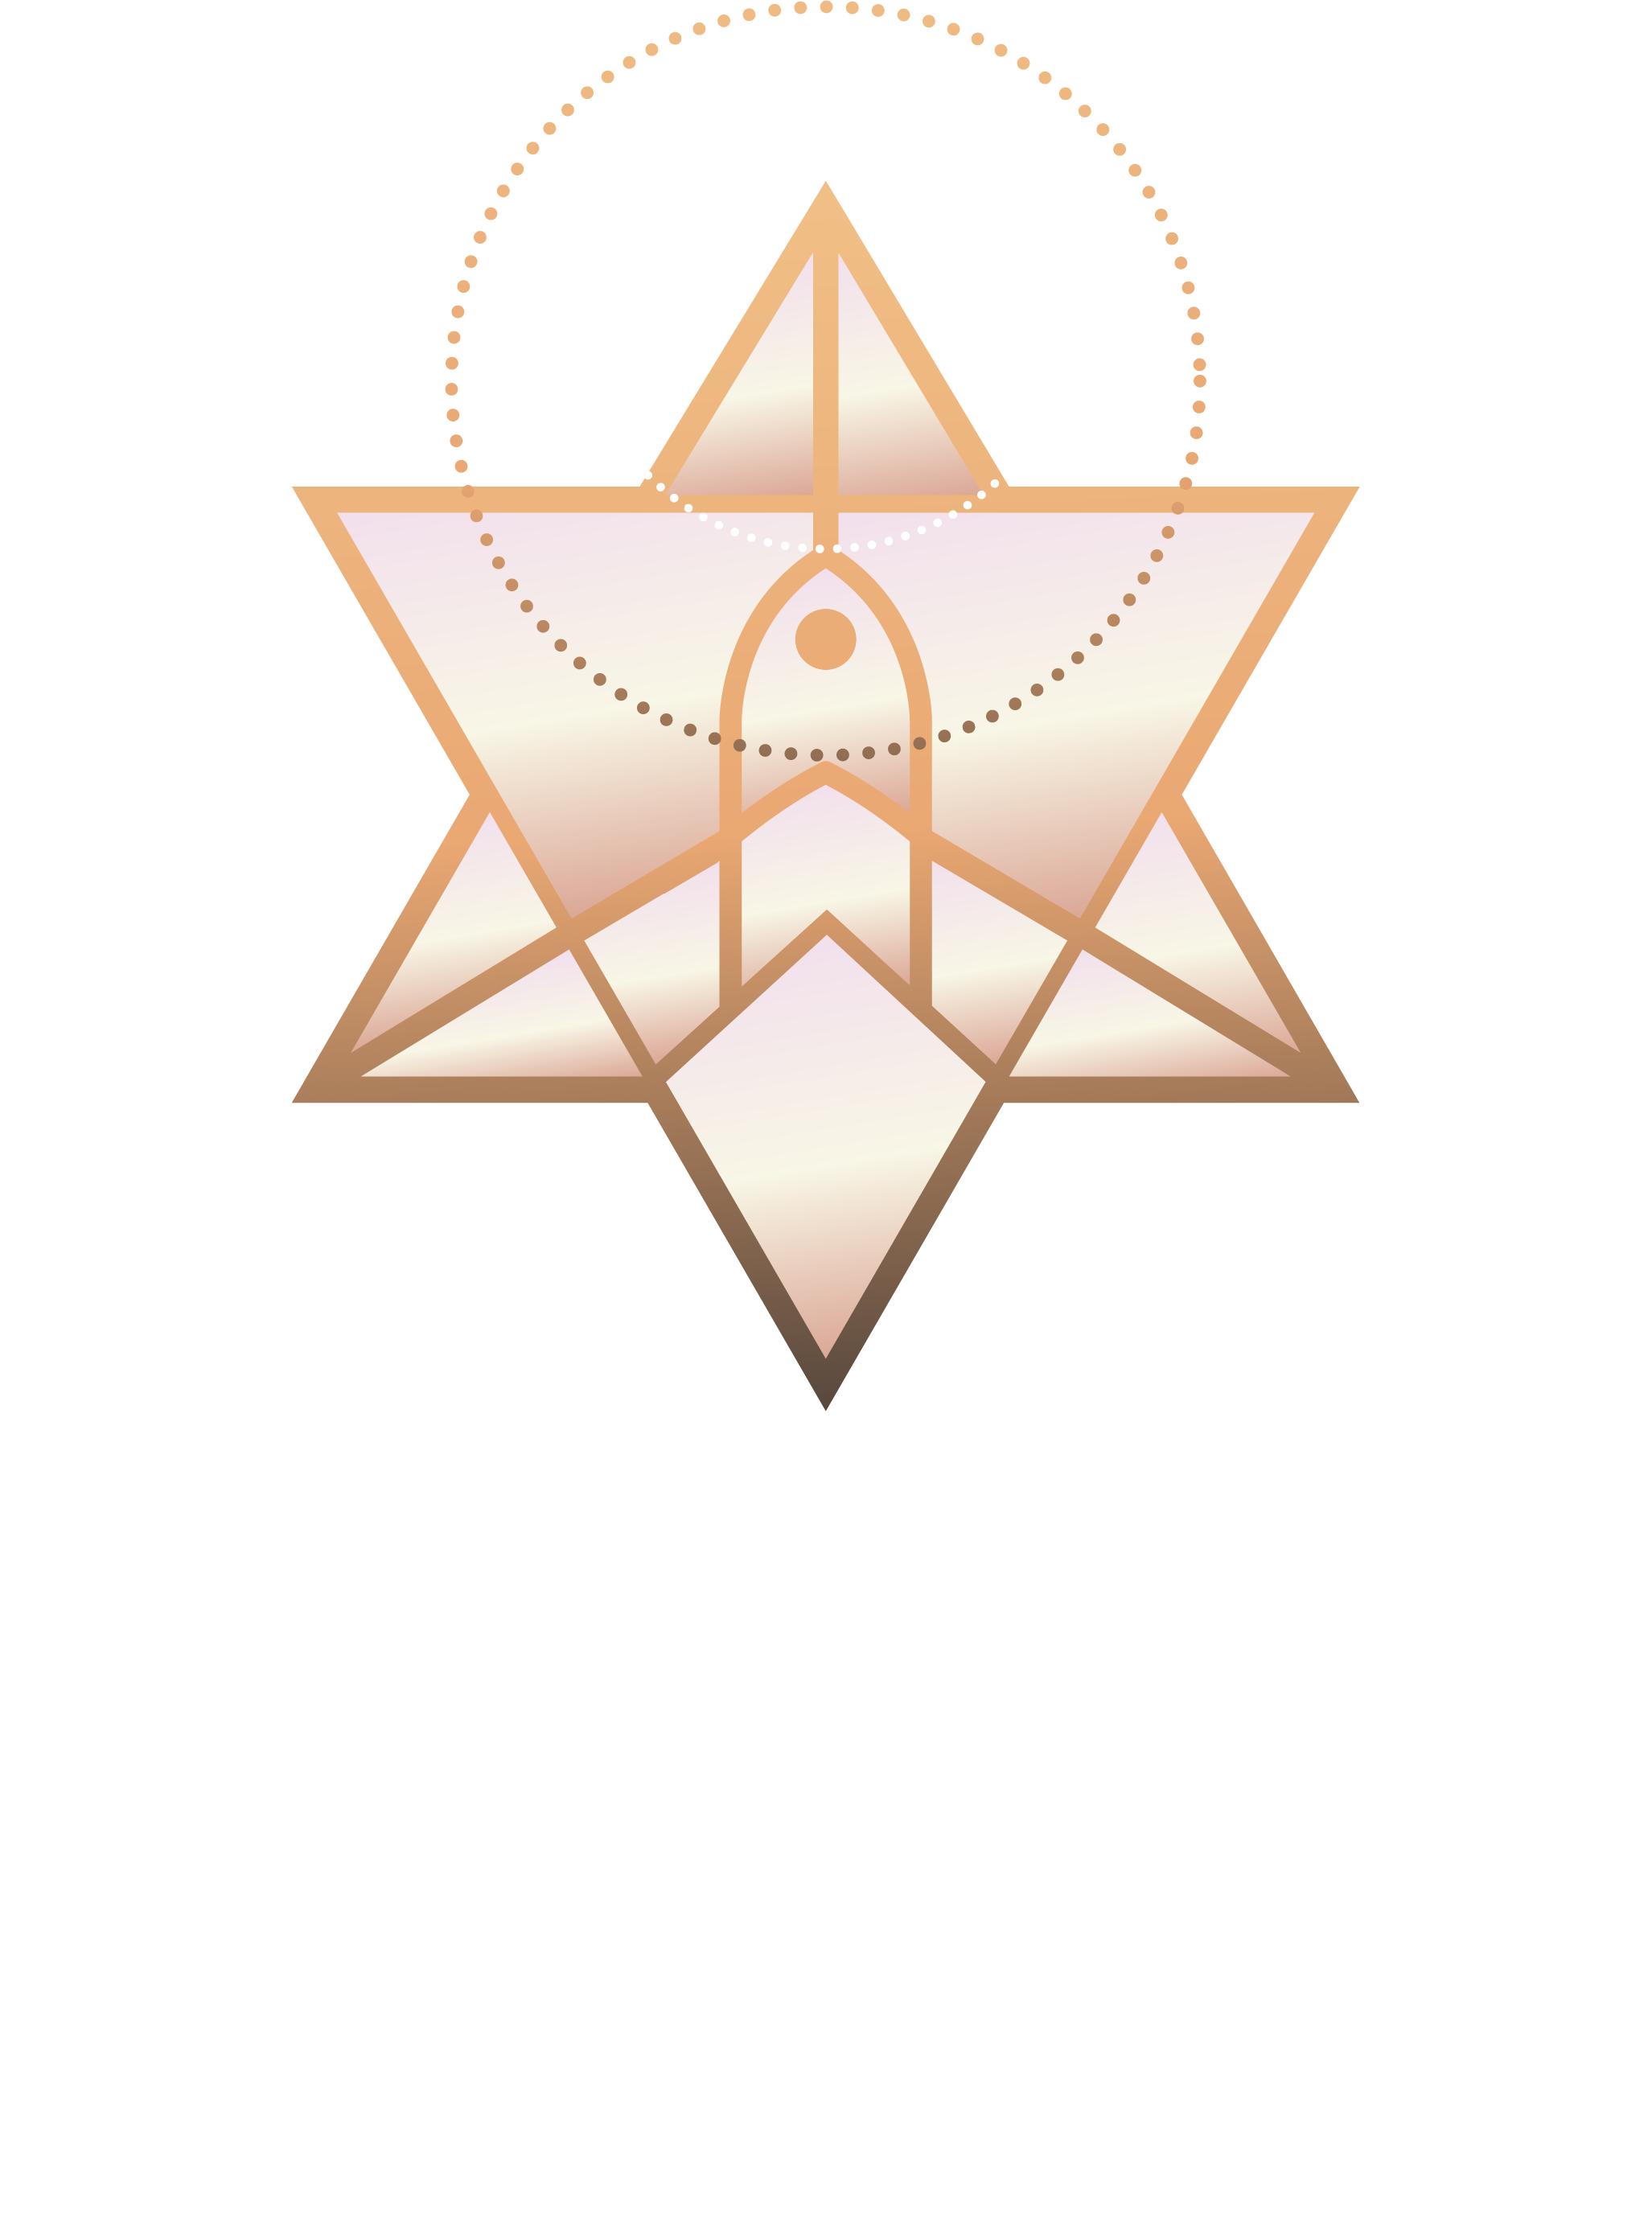 BlissBusinessSolutions